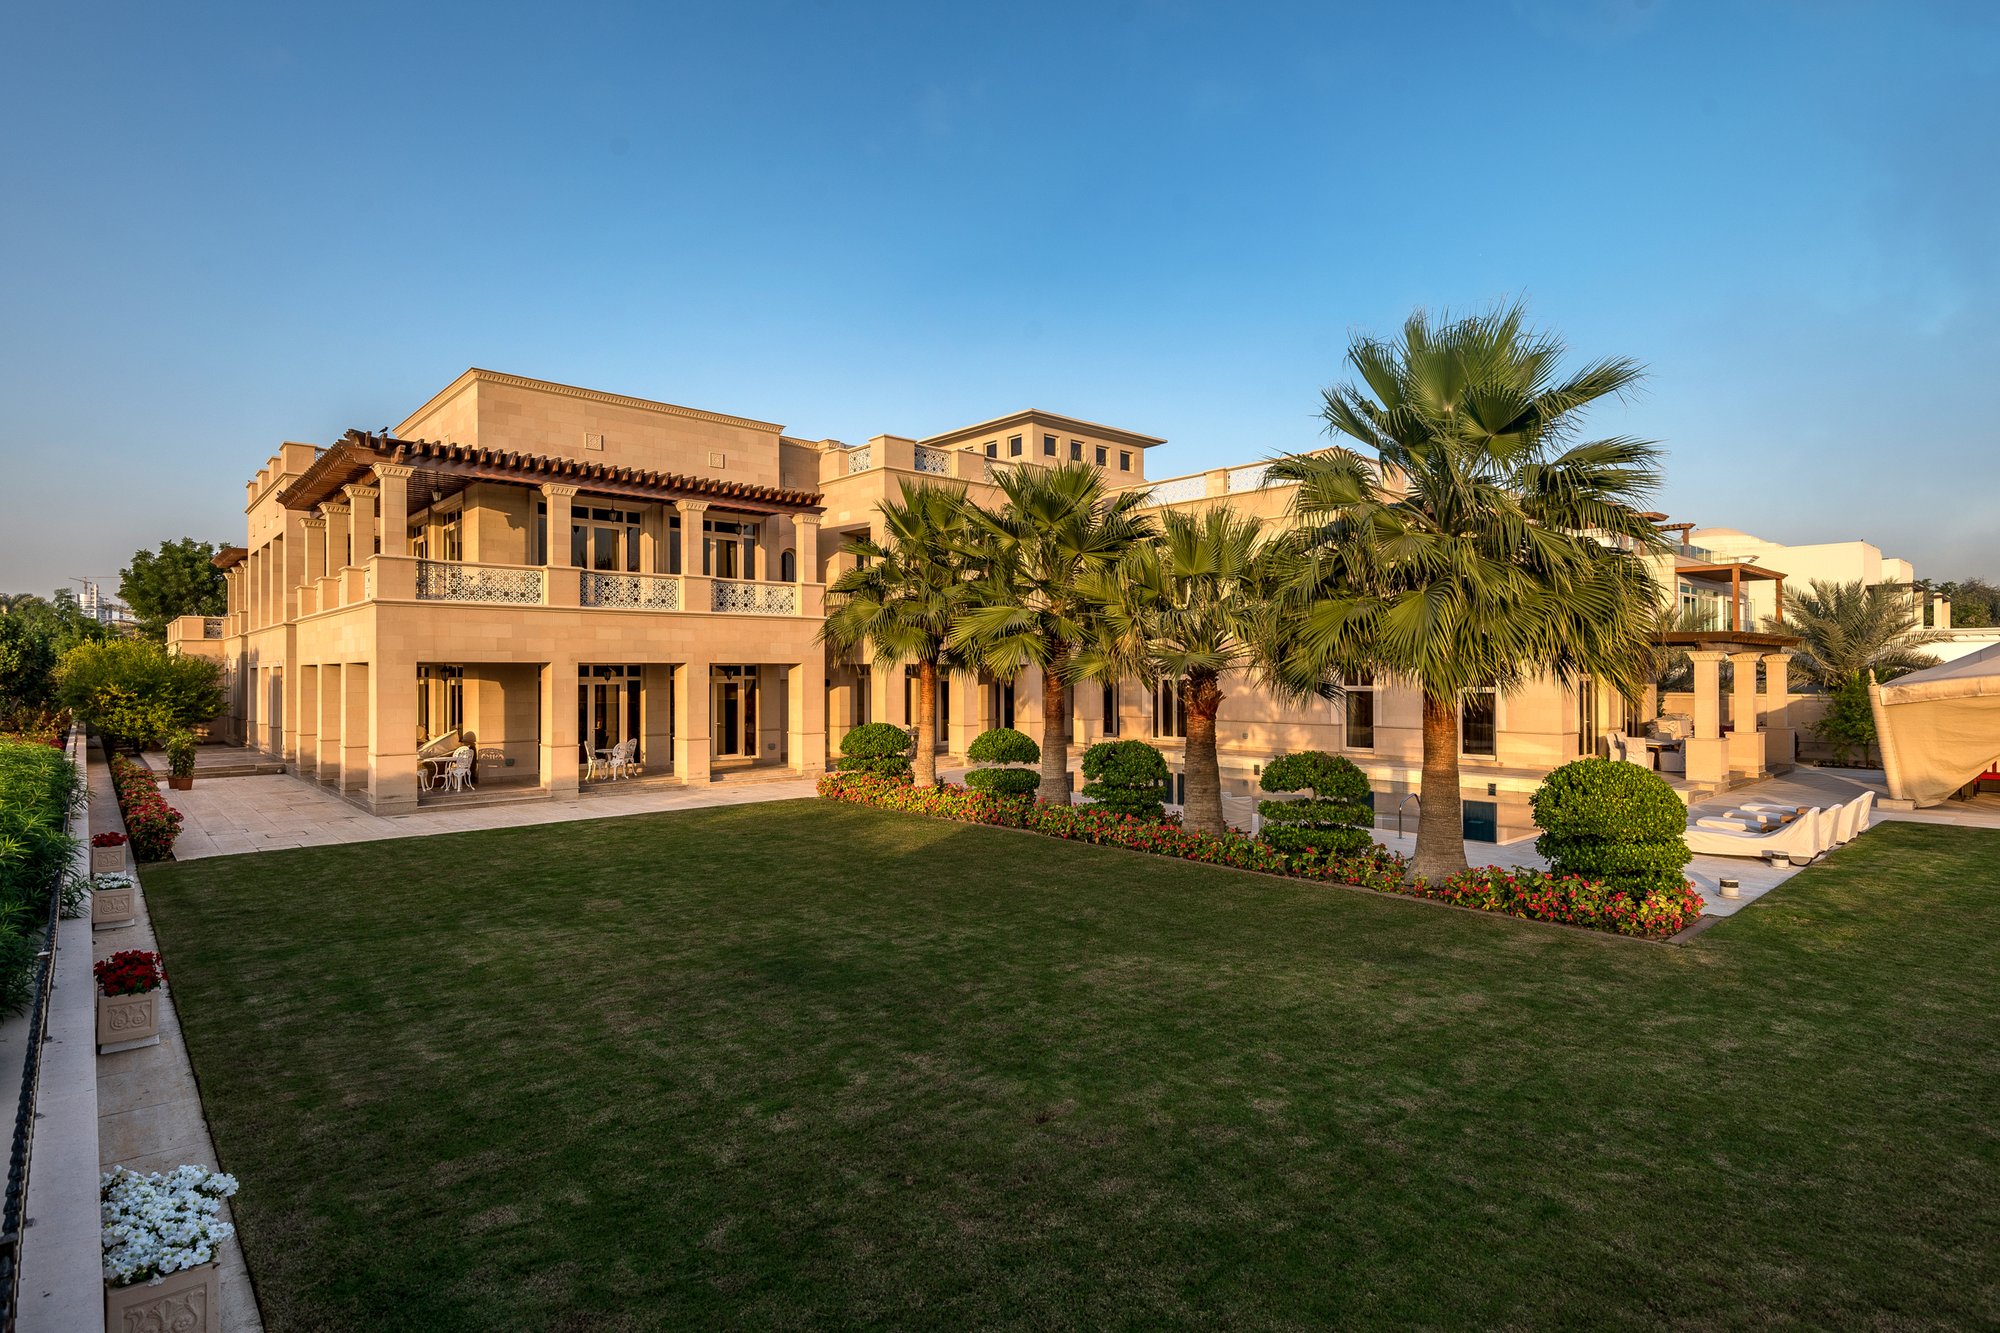 Arabesque Luxury Golf Mansion Emirates Hills In Dubai United Arab